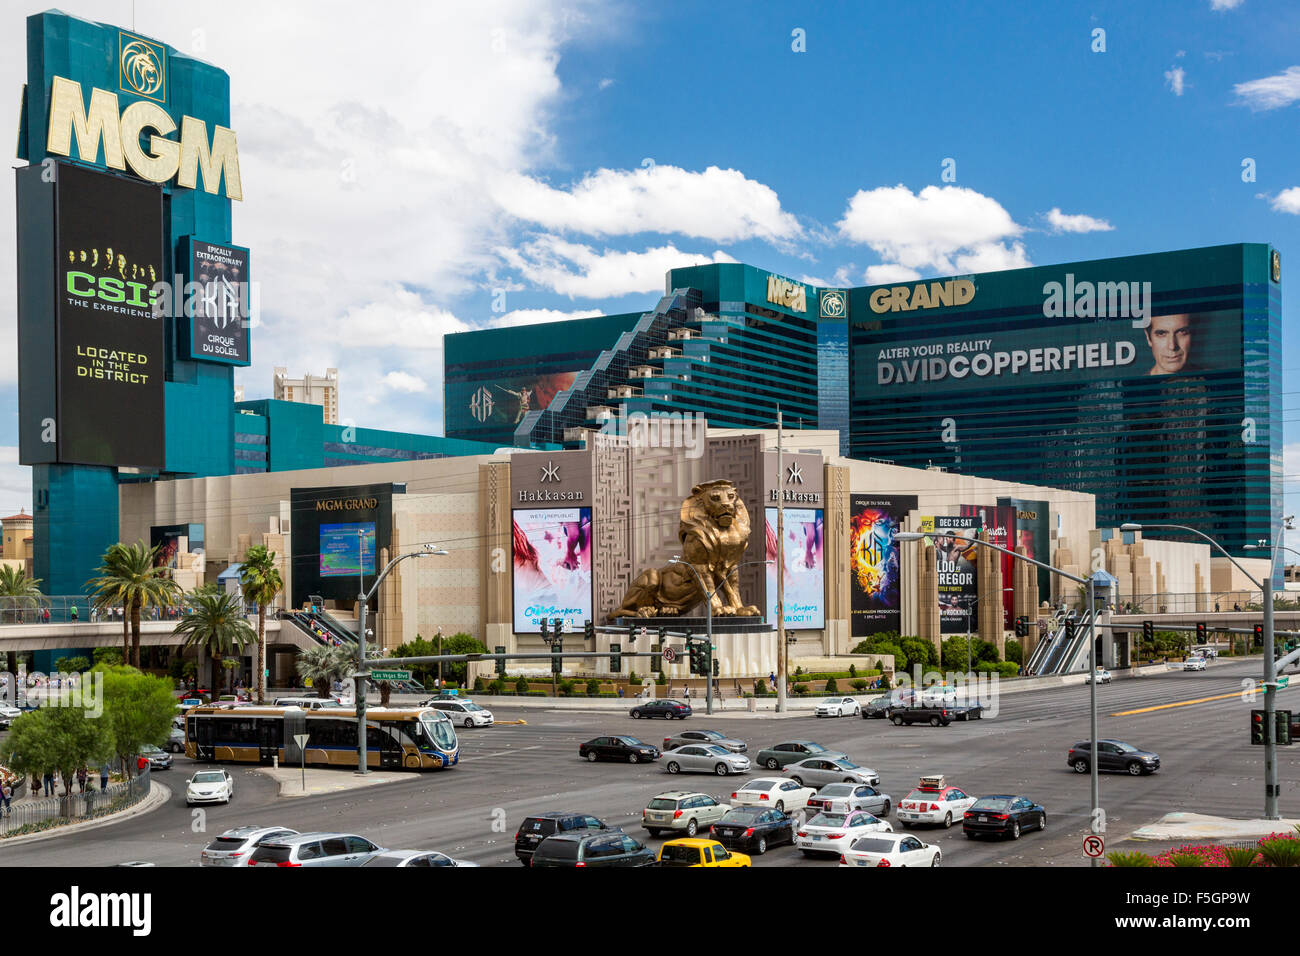 Las Vegas, Nevada. El MGM Grand Hotel and Casino, en la esquina de South Las Vegas Boulevard y Tropicana Avenue. Foto de stock